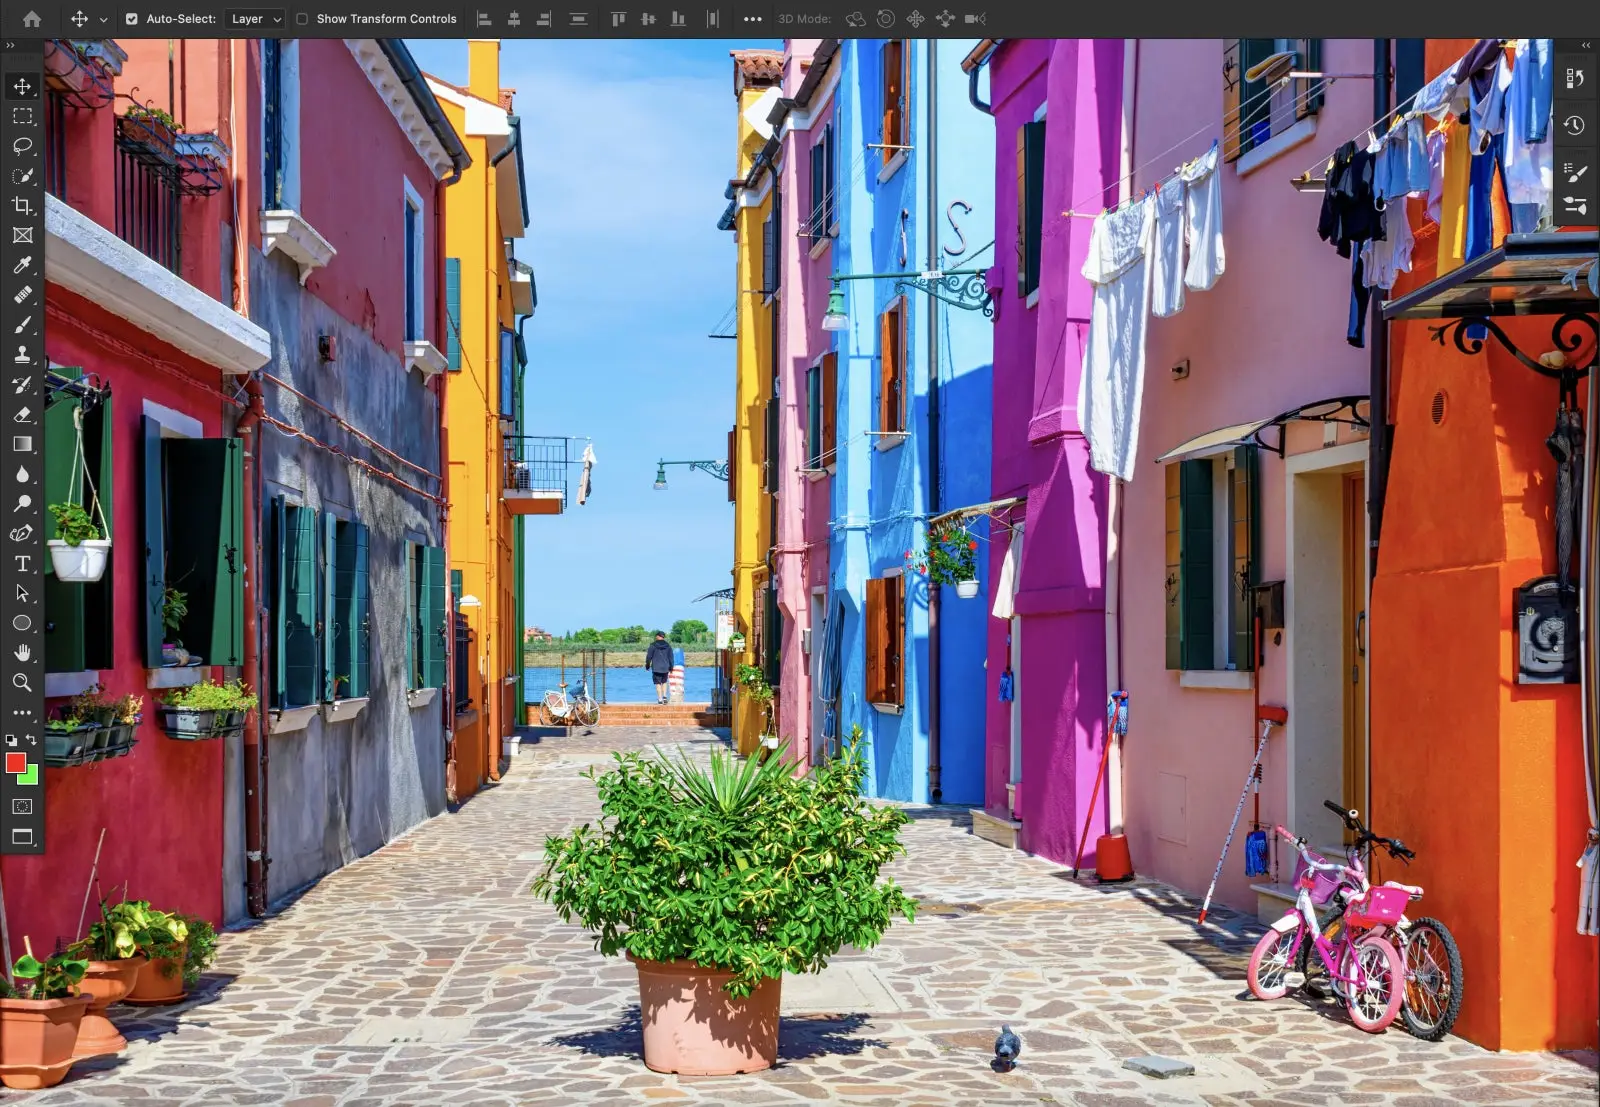 Foto de bairro com casas coloridas, ao fundo está o mar, em primeiro plano uma planta e ao redor tem mais canteiros, roupas e uma bicicleta